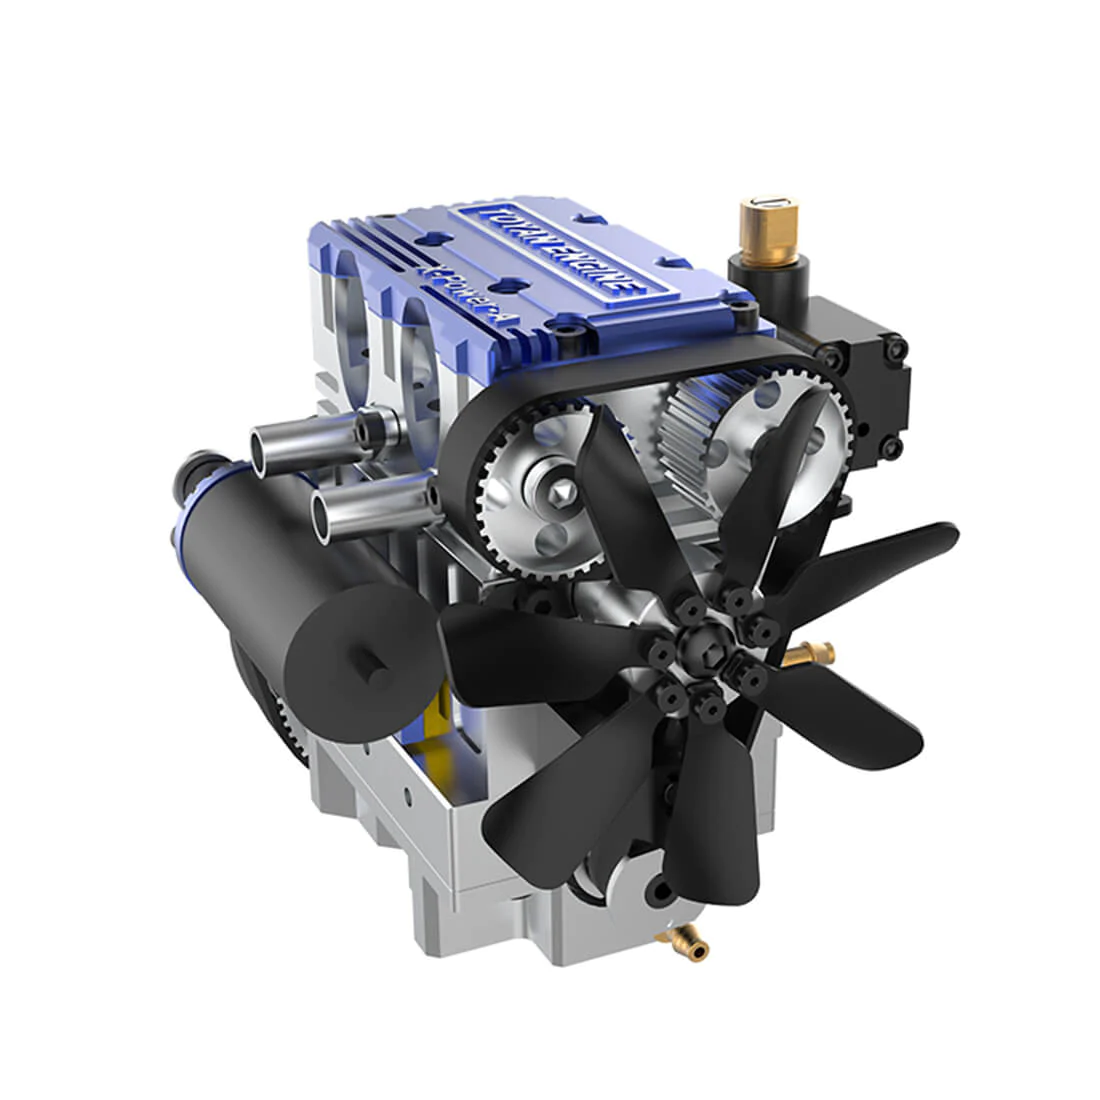 Toyan X-Power 2-Cylinder 4-Stroke Kit DIY Build RC Car Engine FS-L200W -Blue 1